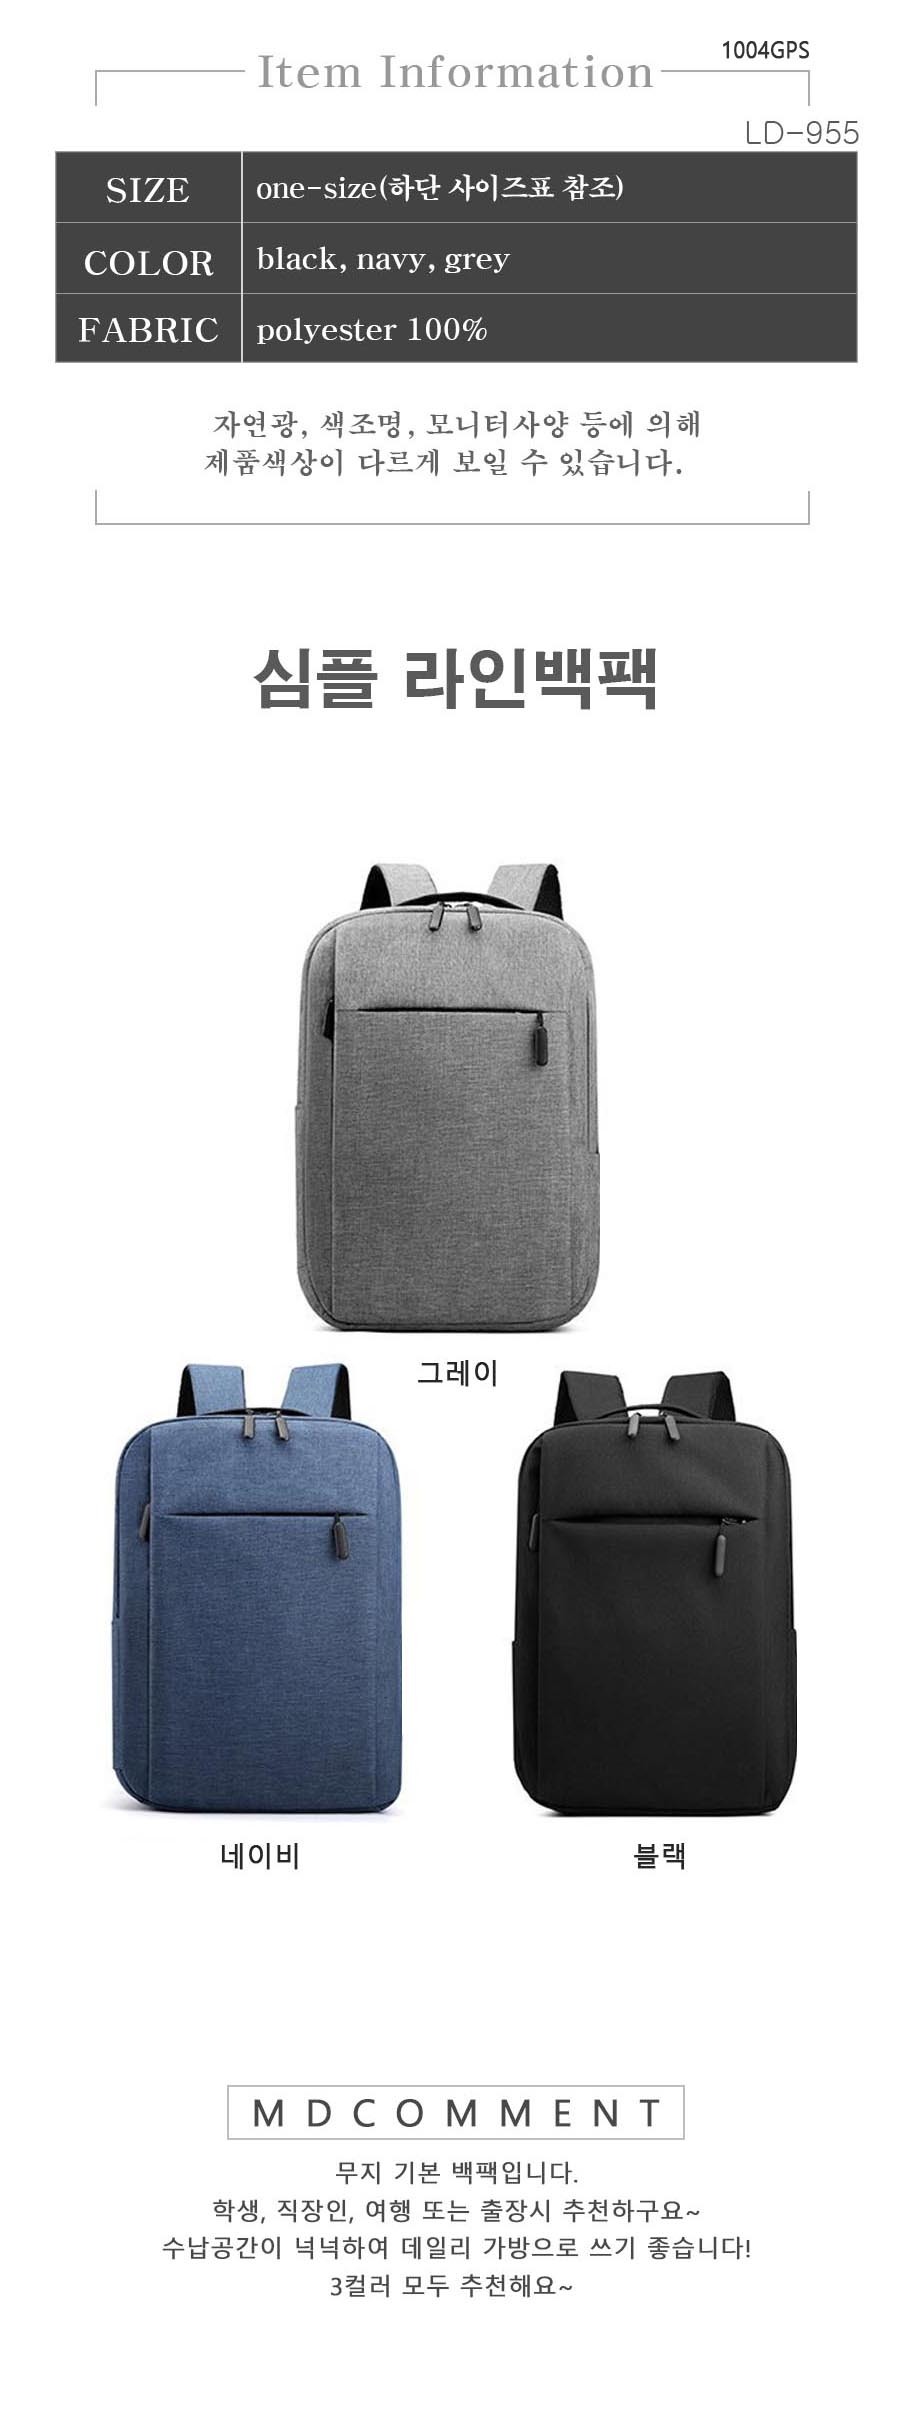 LD-955-simple-line-bagpack-01.jpg